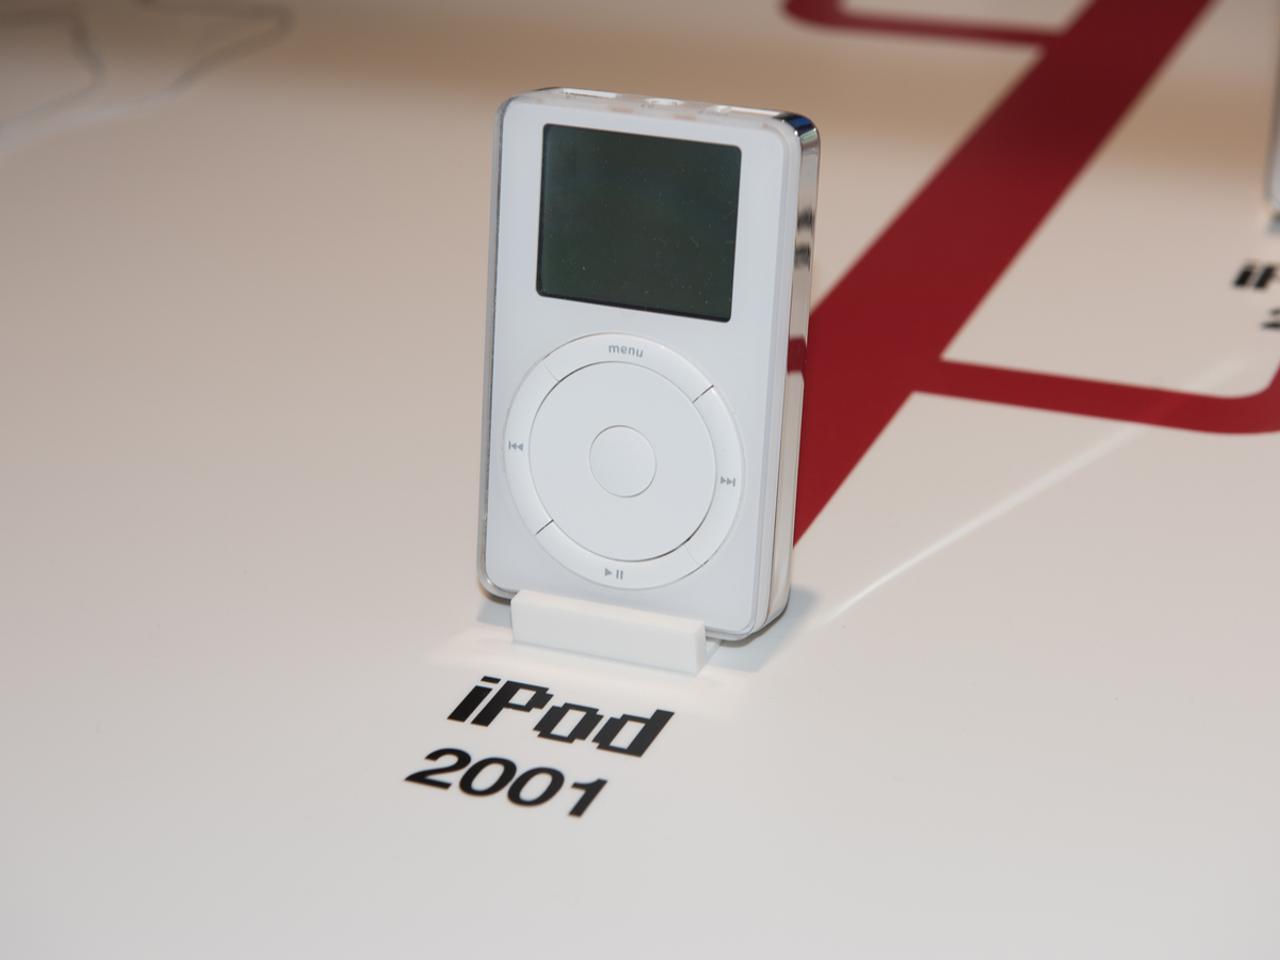 よう、17年ぶりだな。2018年になった今でも最新のiTunesが最古のiPodを認識